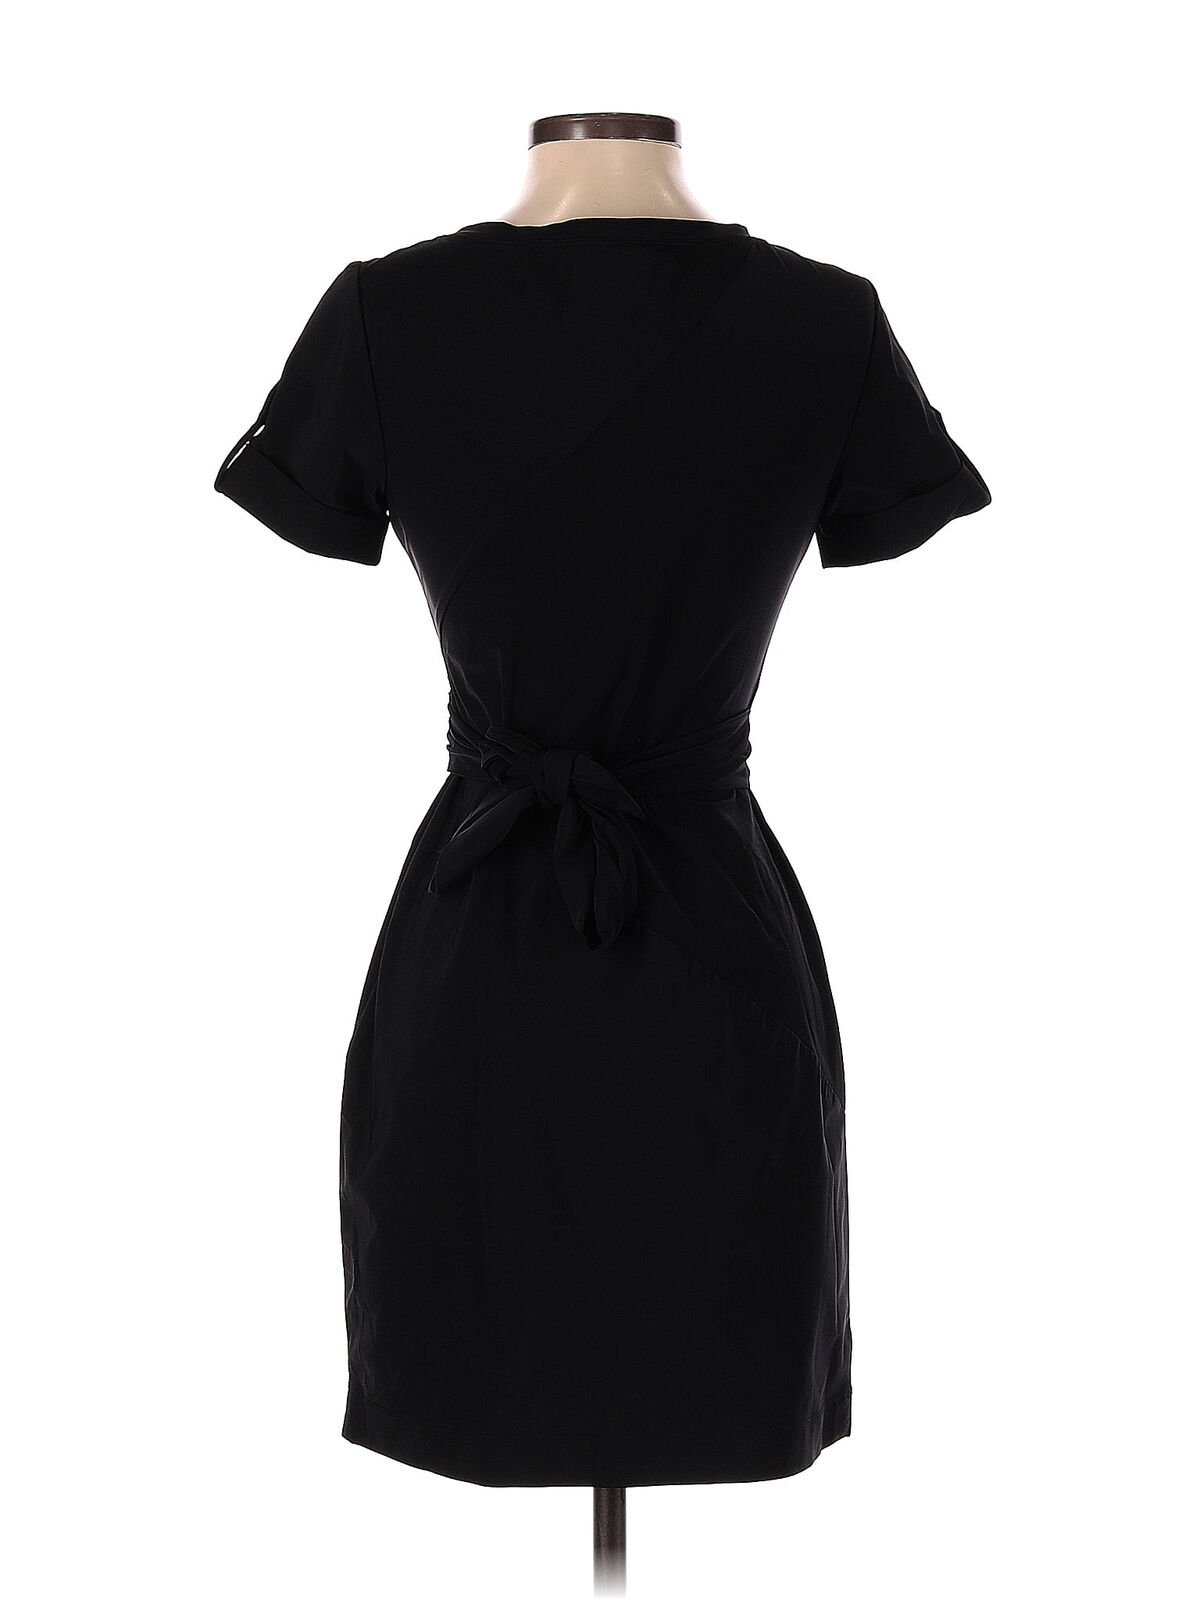 Diane von Furstenberg Women Black Casual Dress 2 - image 2